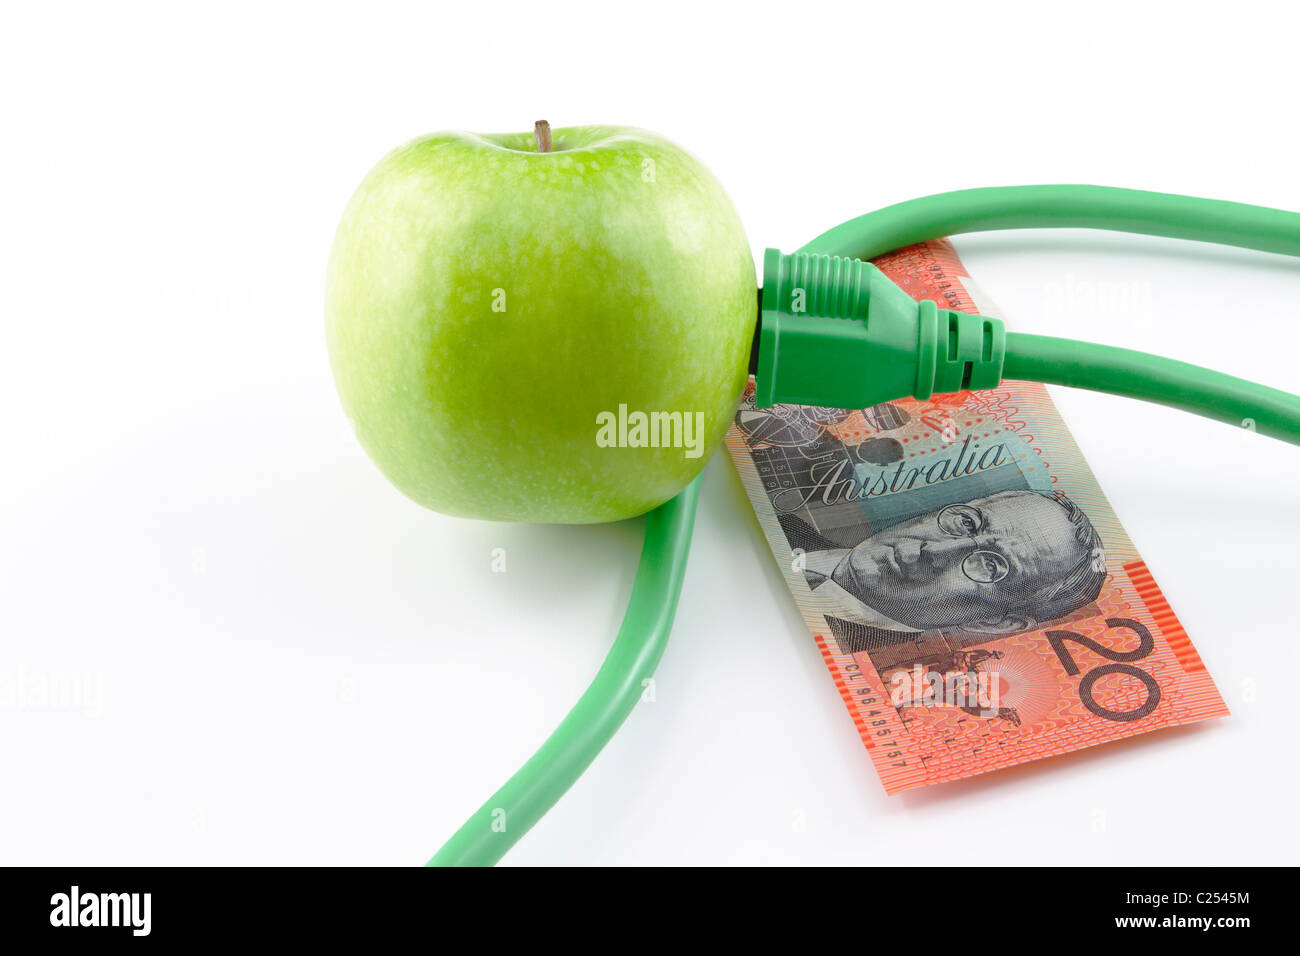 Bouchon électrique inséré dans la pomme verte avec la monnaie australienne ; fond blanc. Banque D'Images